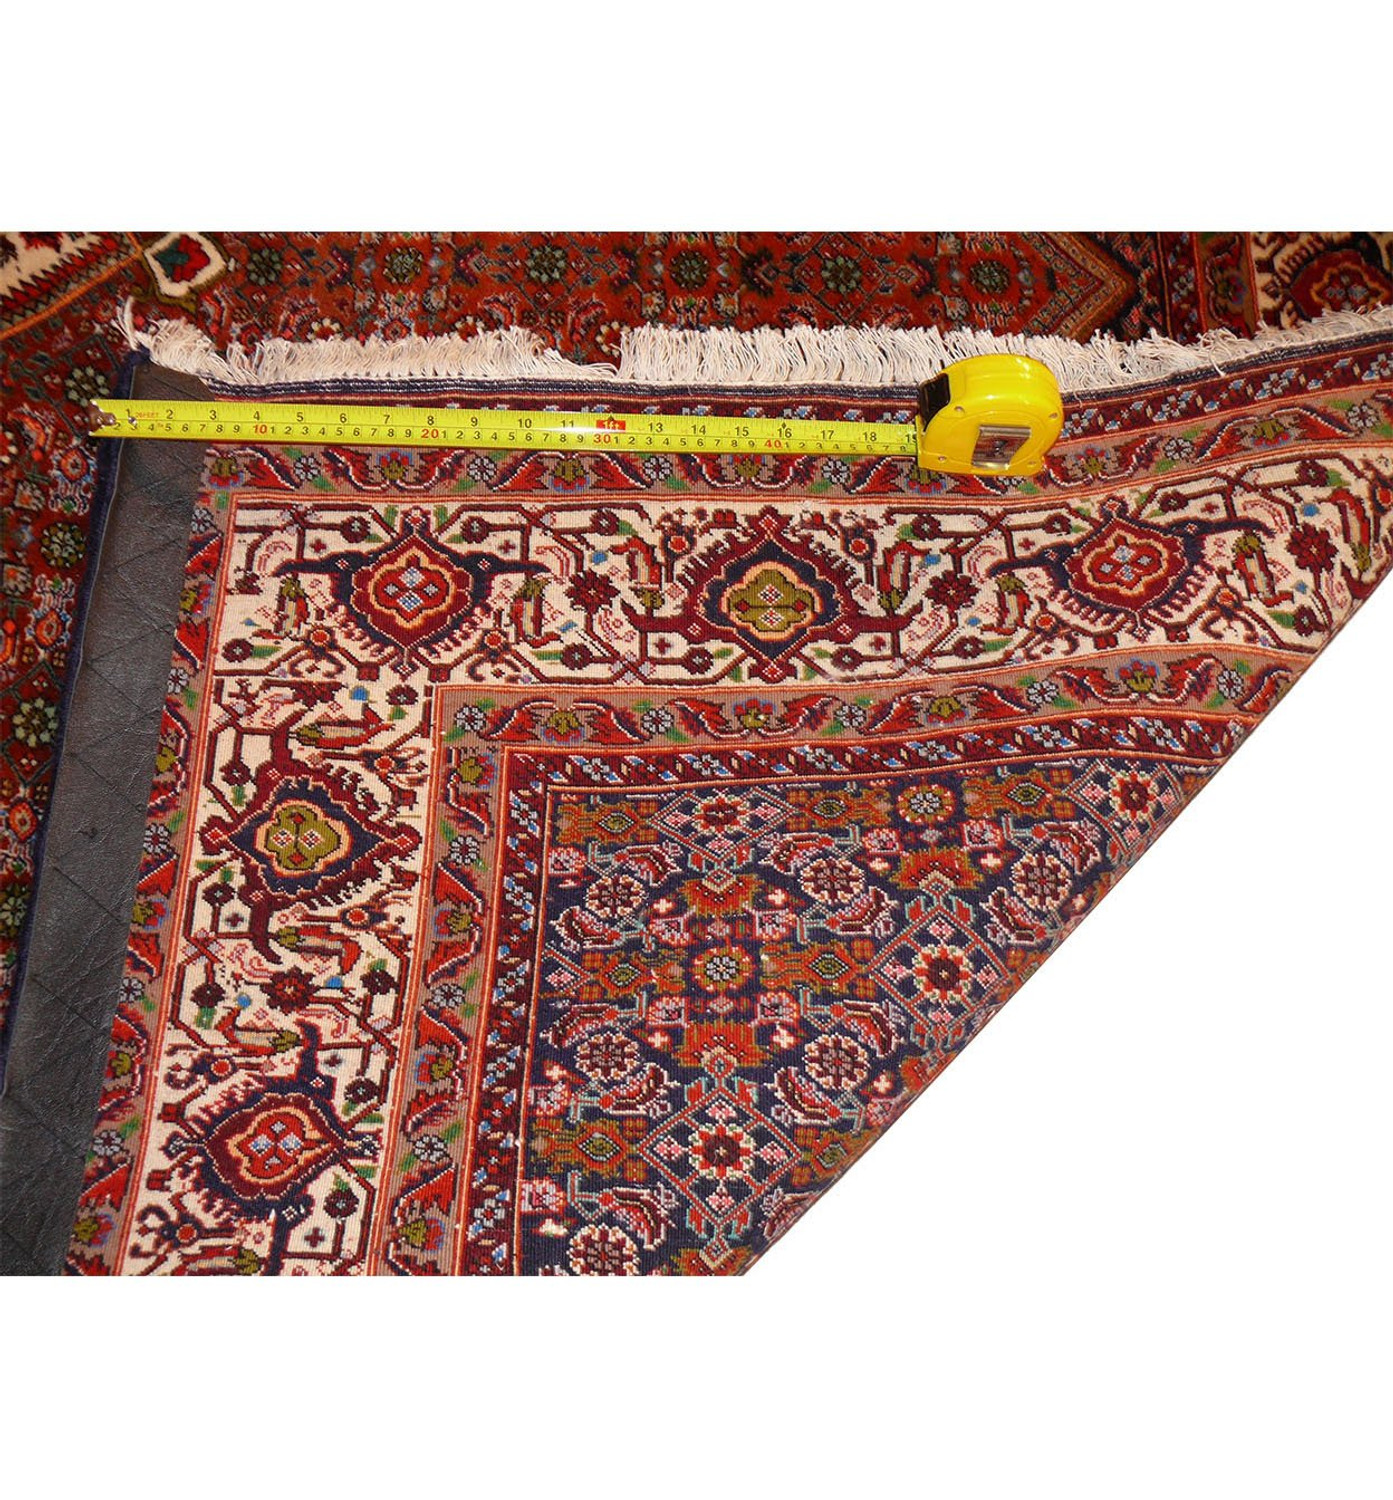 6'8 x 9'2 Antique Persian Bijar Rug